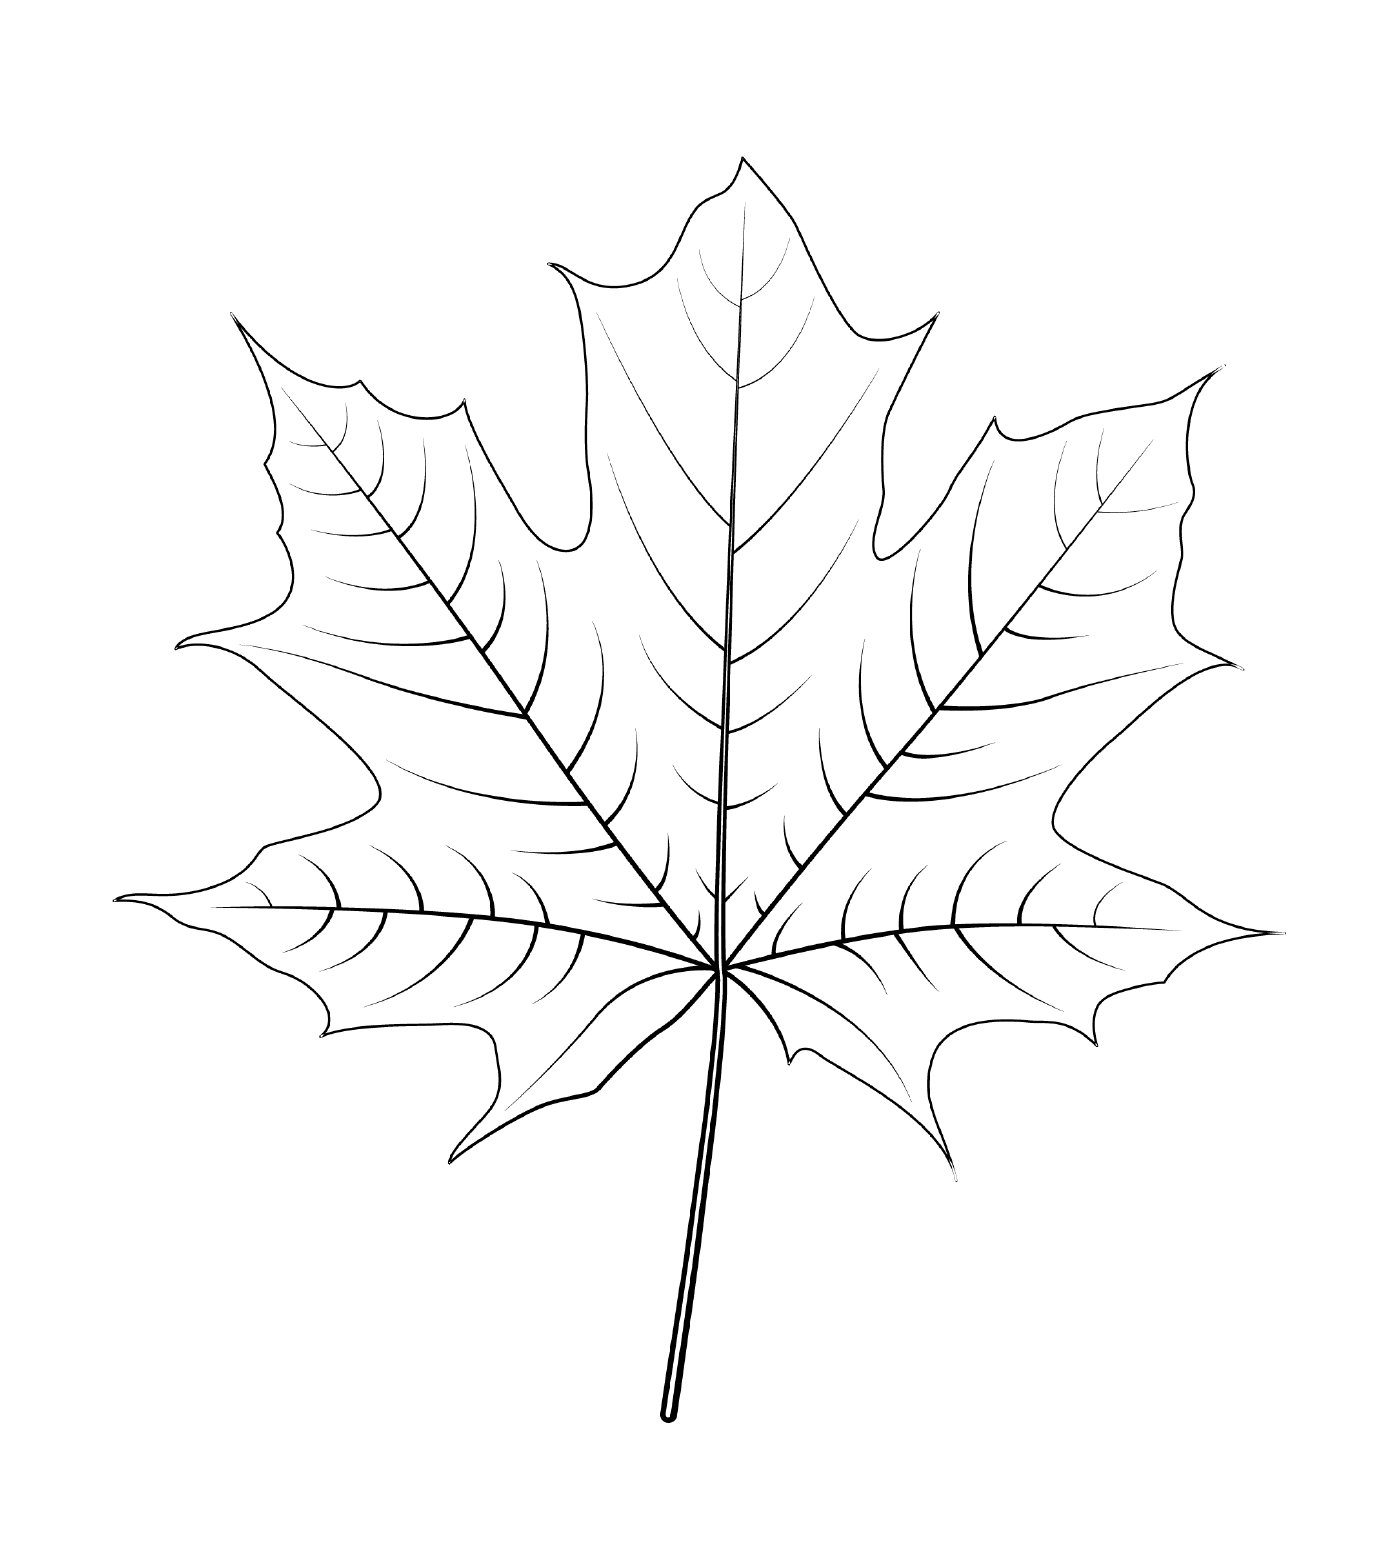  Norwegian maple leaf 